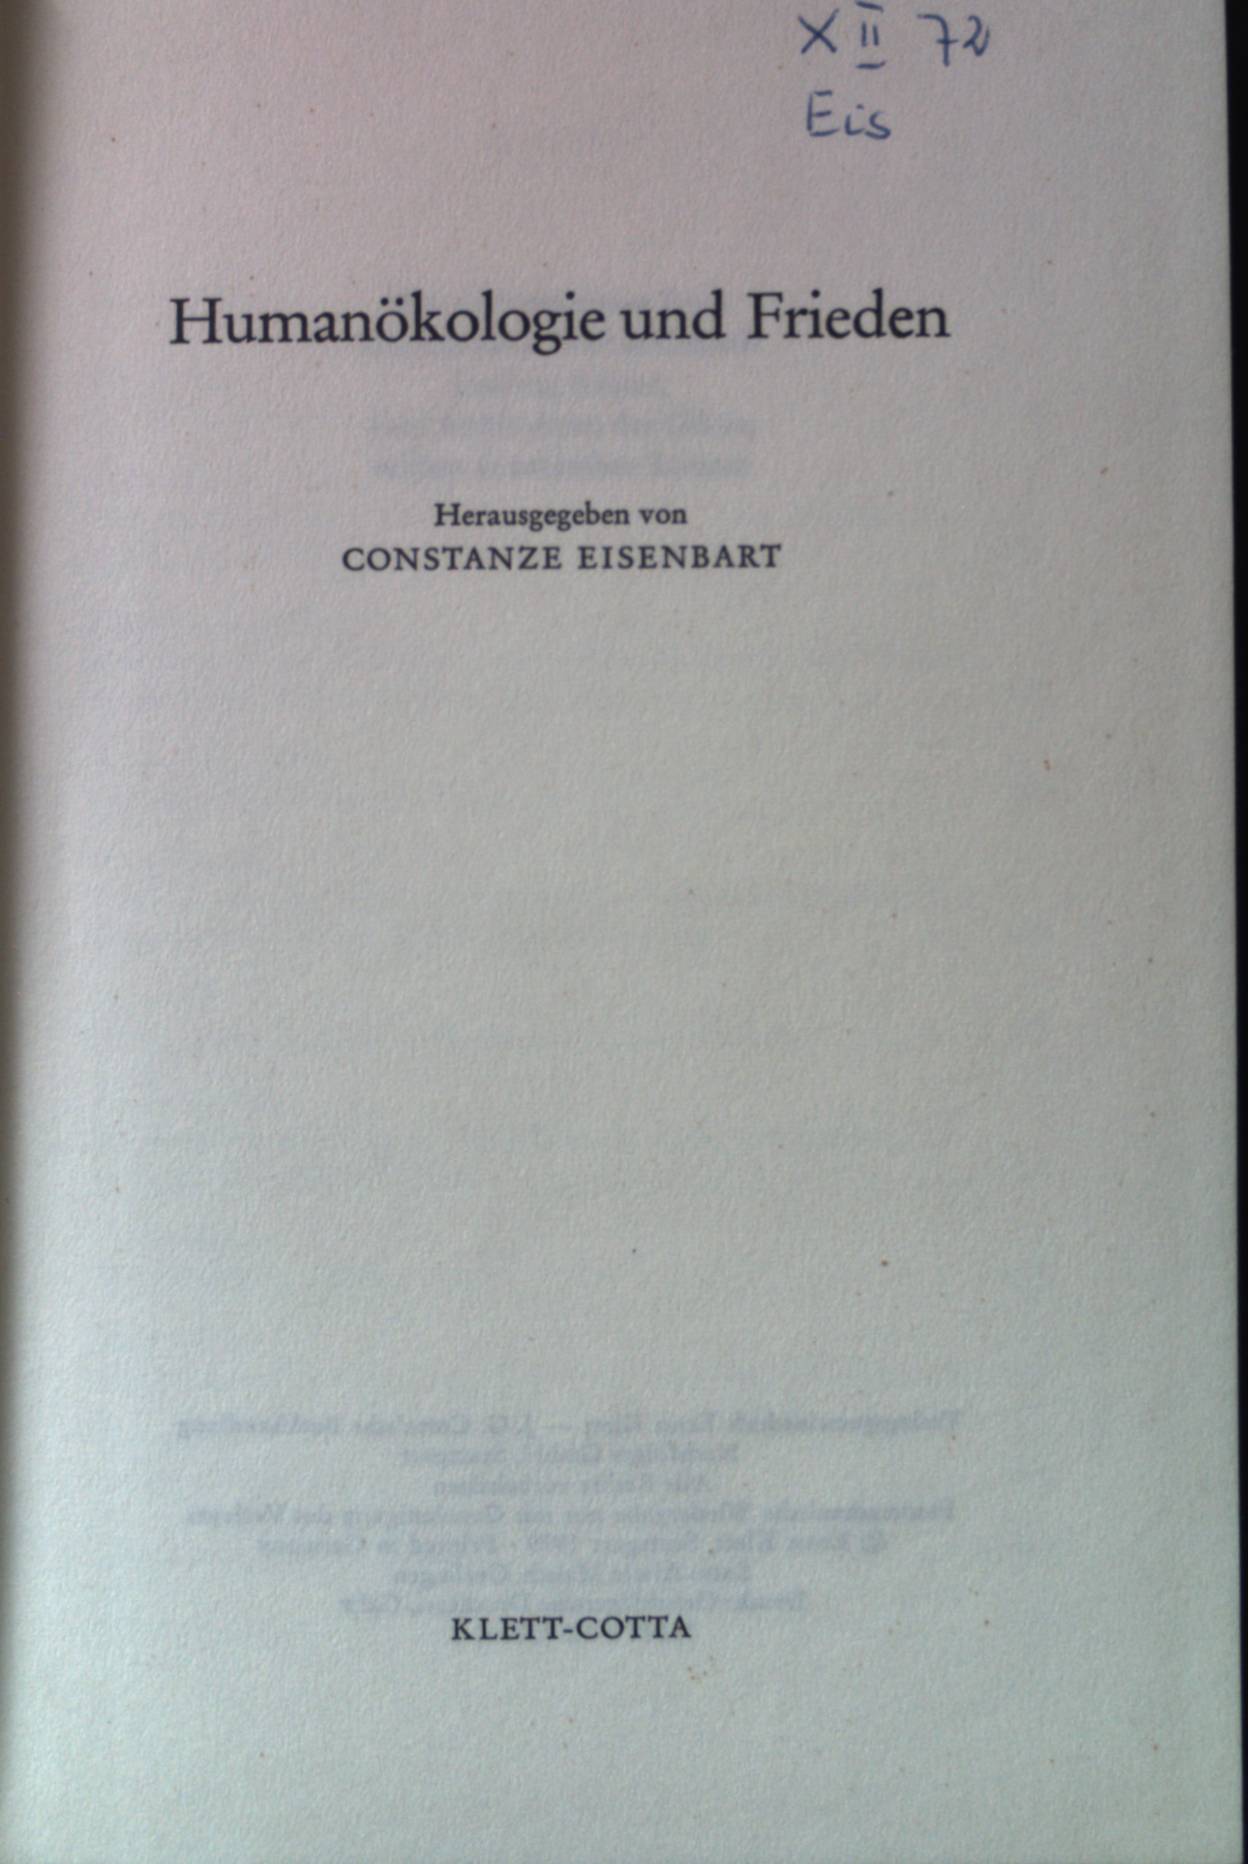 Humanökologie und Frieden. Forschungen und Berichte der Evangelischen Studiengemeinschaft ; Bd. 34 - Eisenbart, Constanze